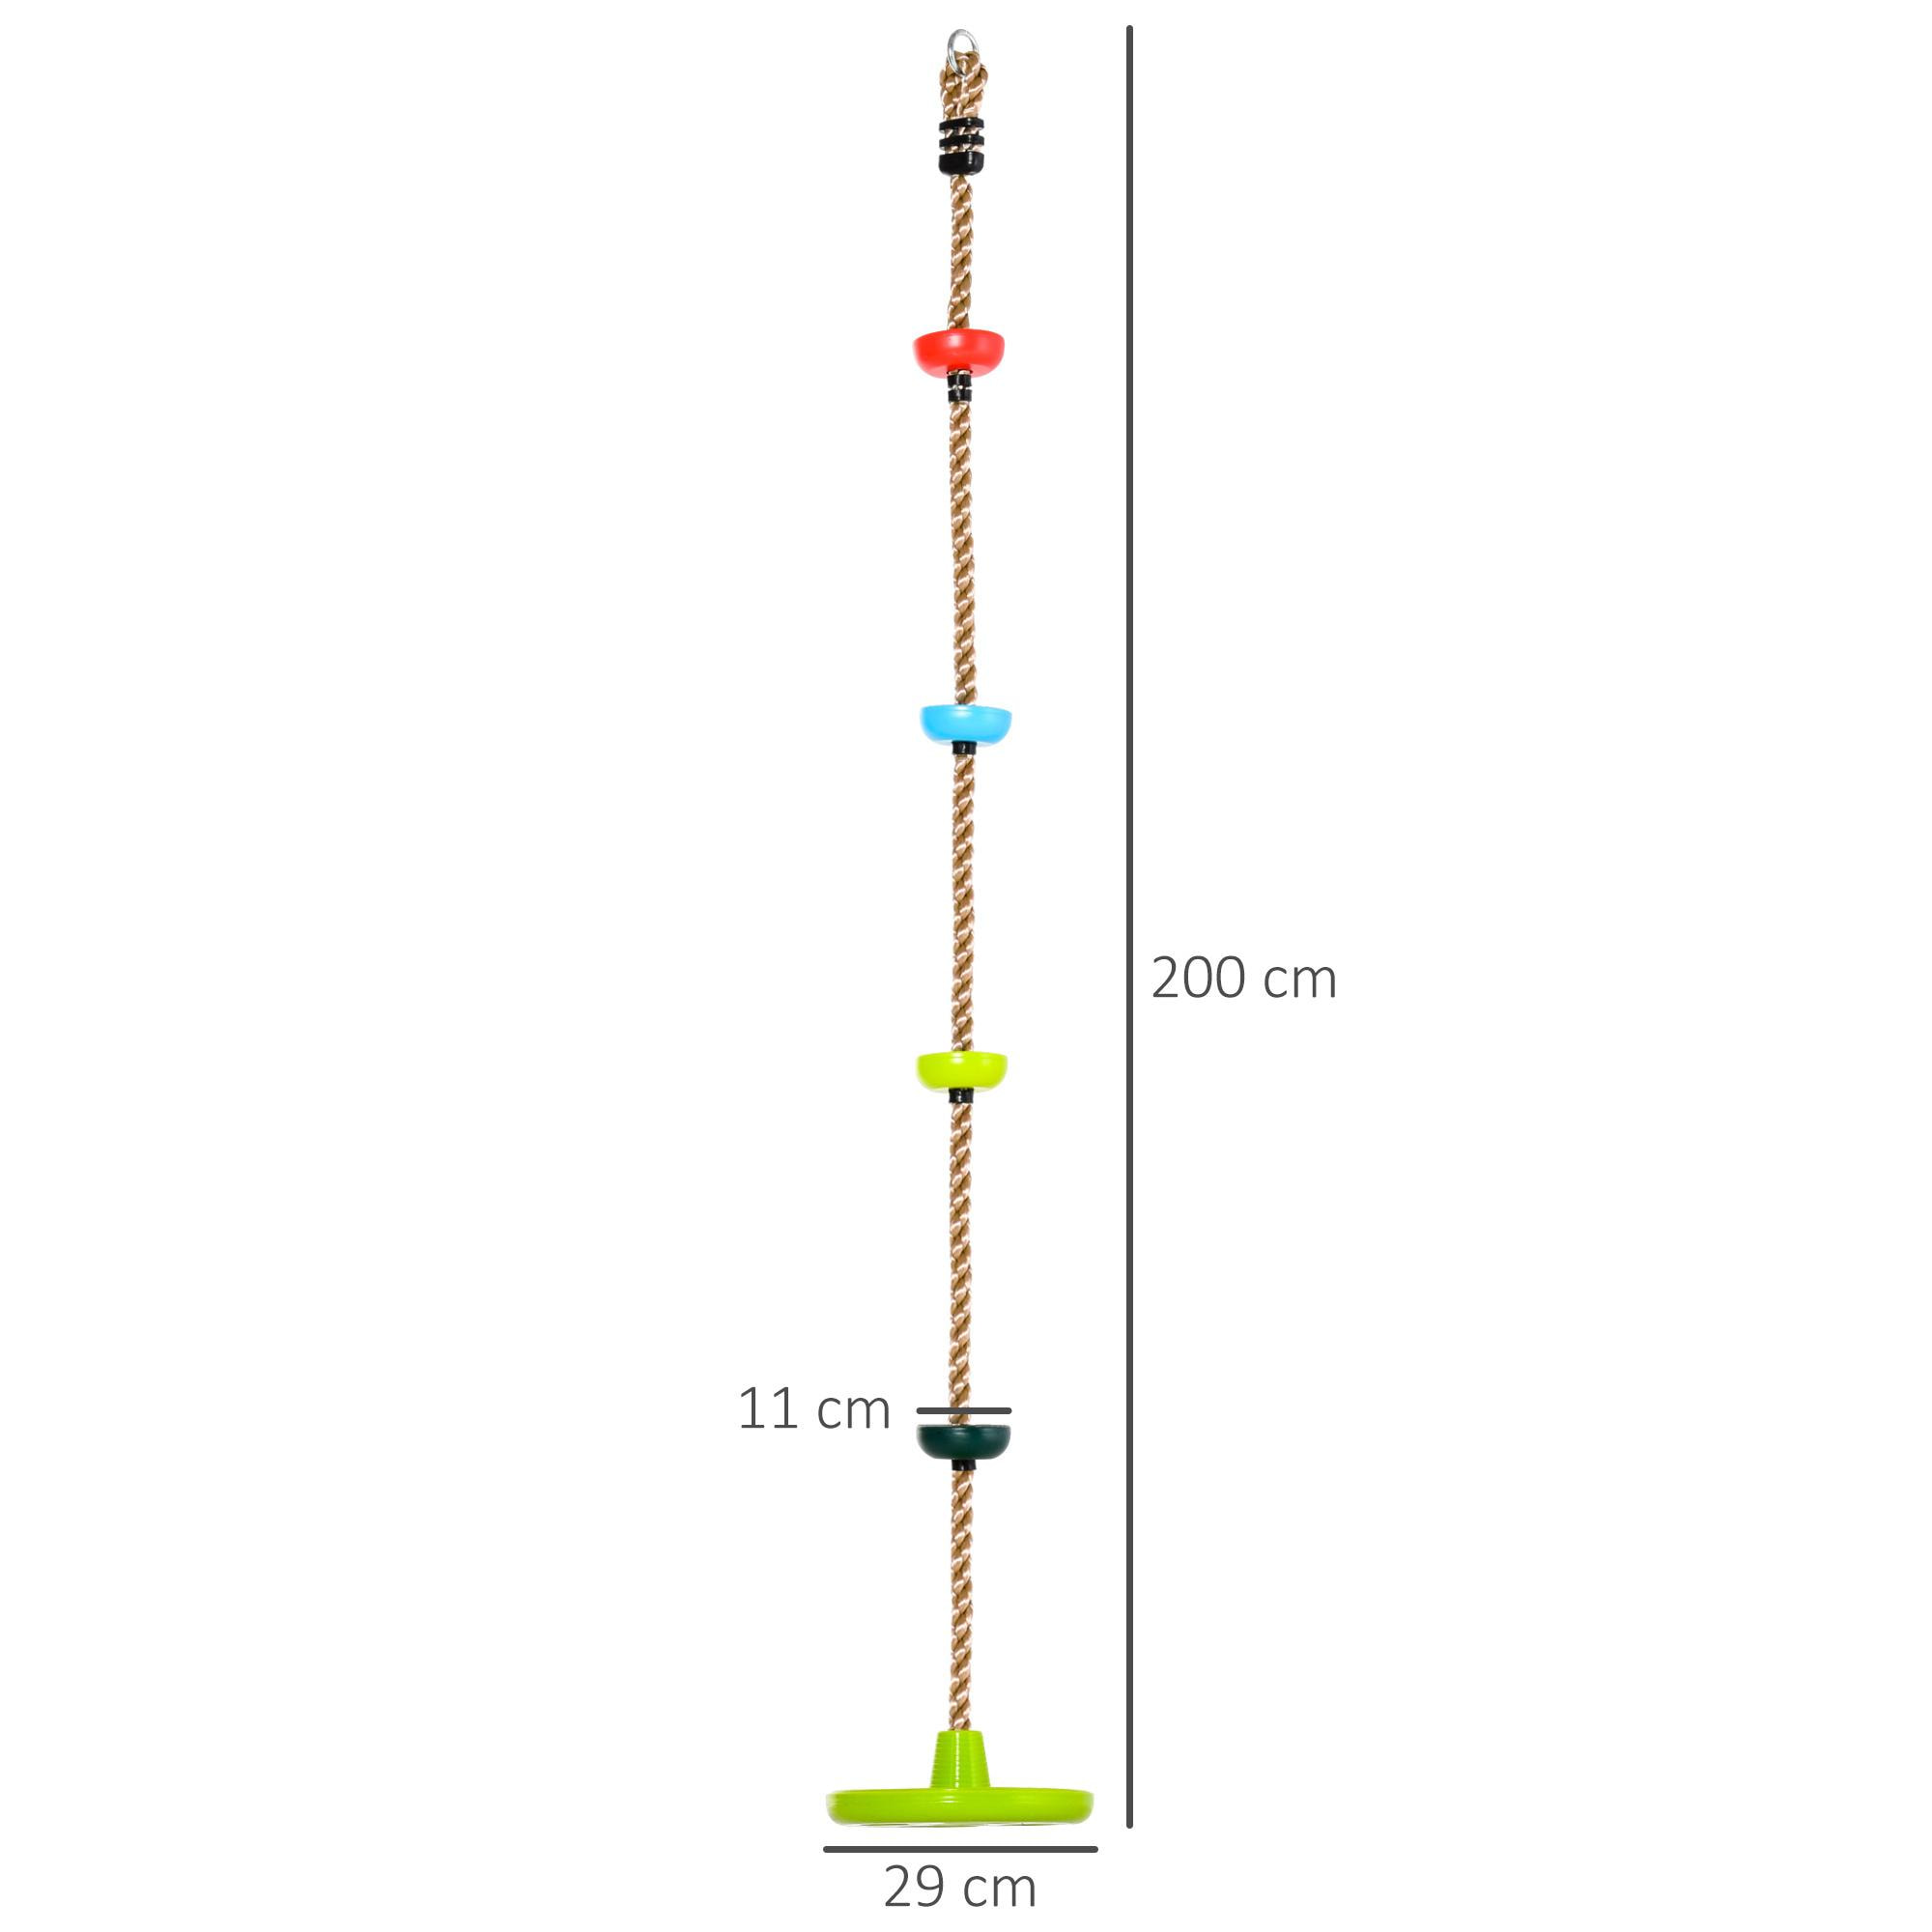 Corde d'escalade avec siège de balançoire rond 2 m pour enfant - usage intérieur/extérieur - charge max. 100 Kg - PP rouge bleu vert